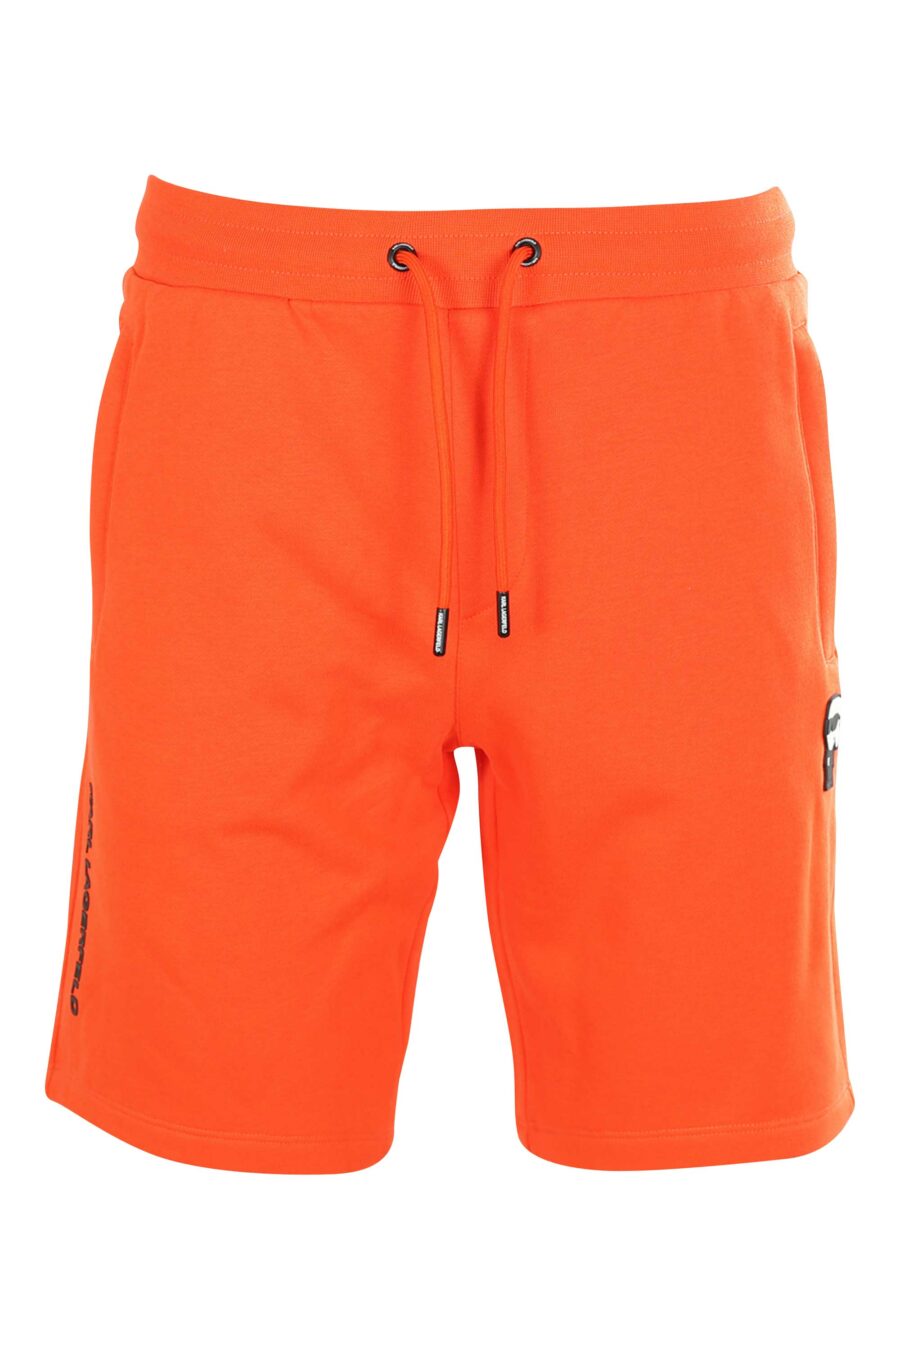 Pantalón de chándal corto naranja con logo de goma - 4062226266710